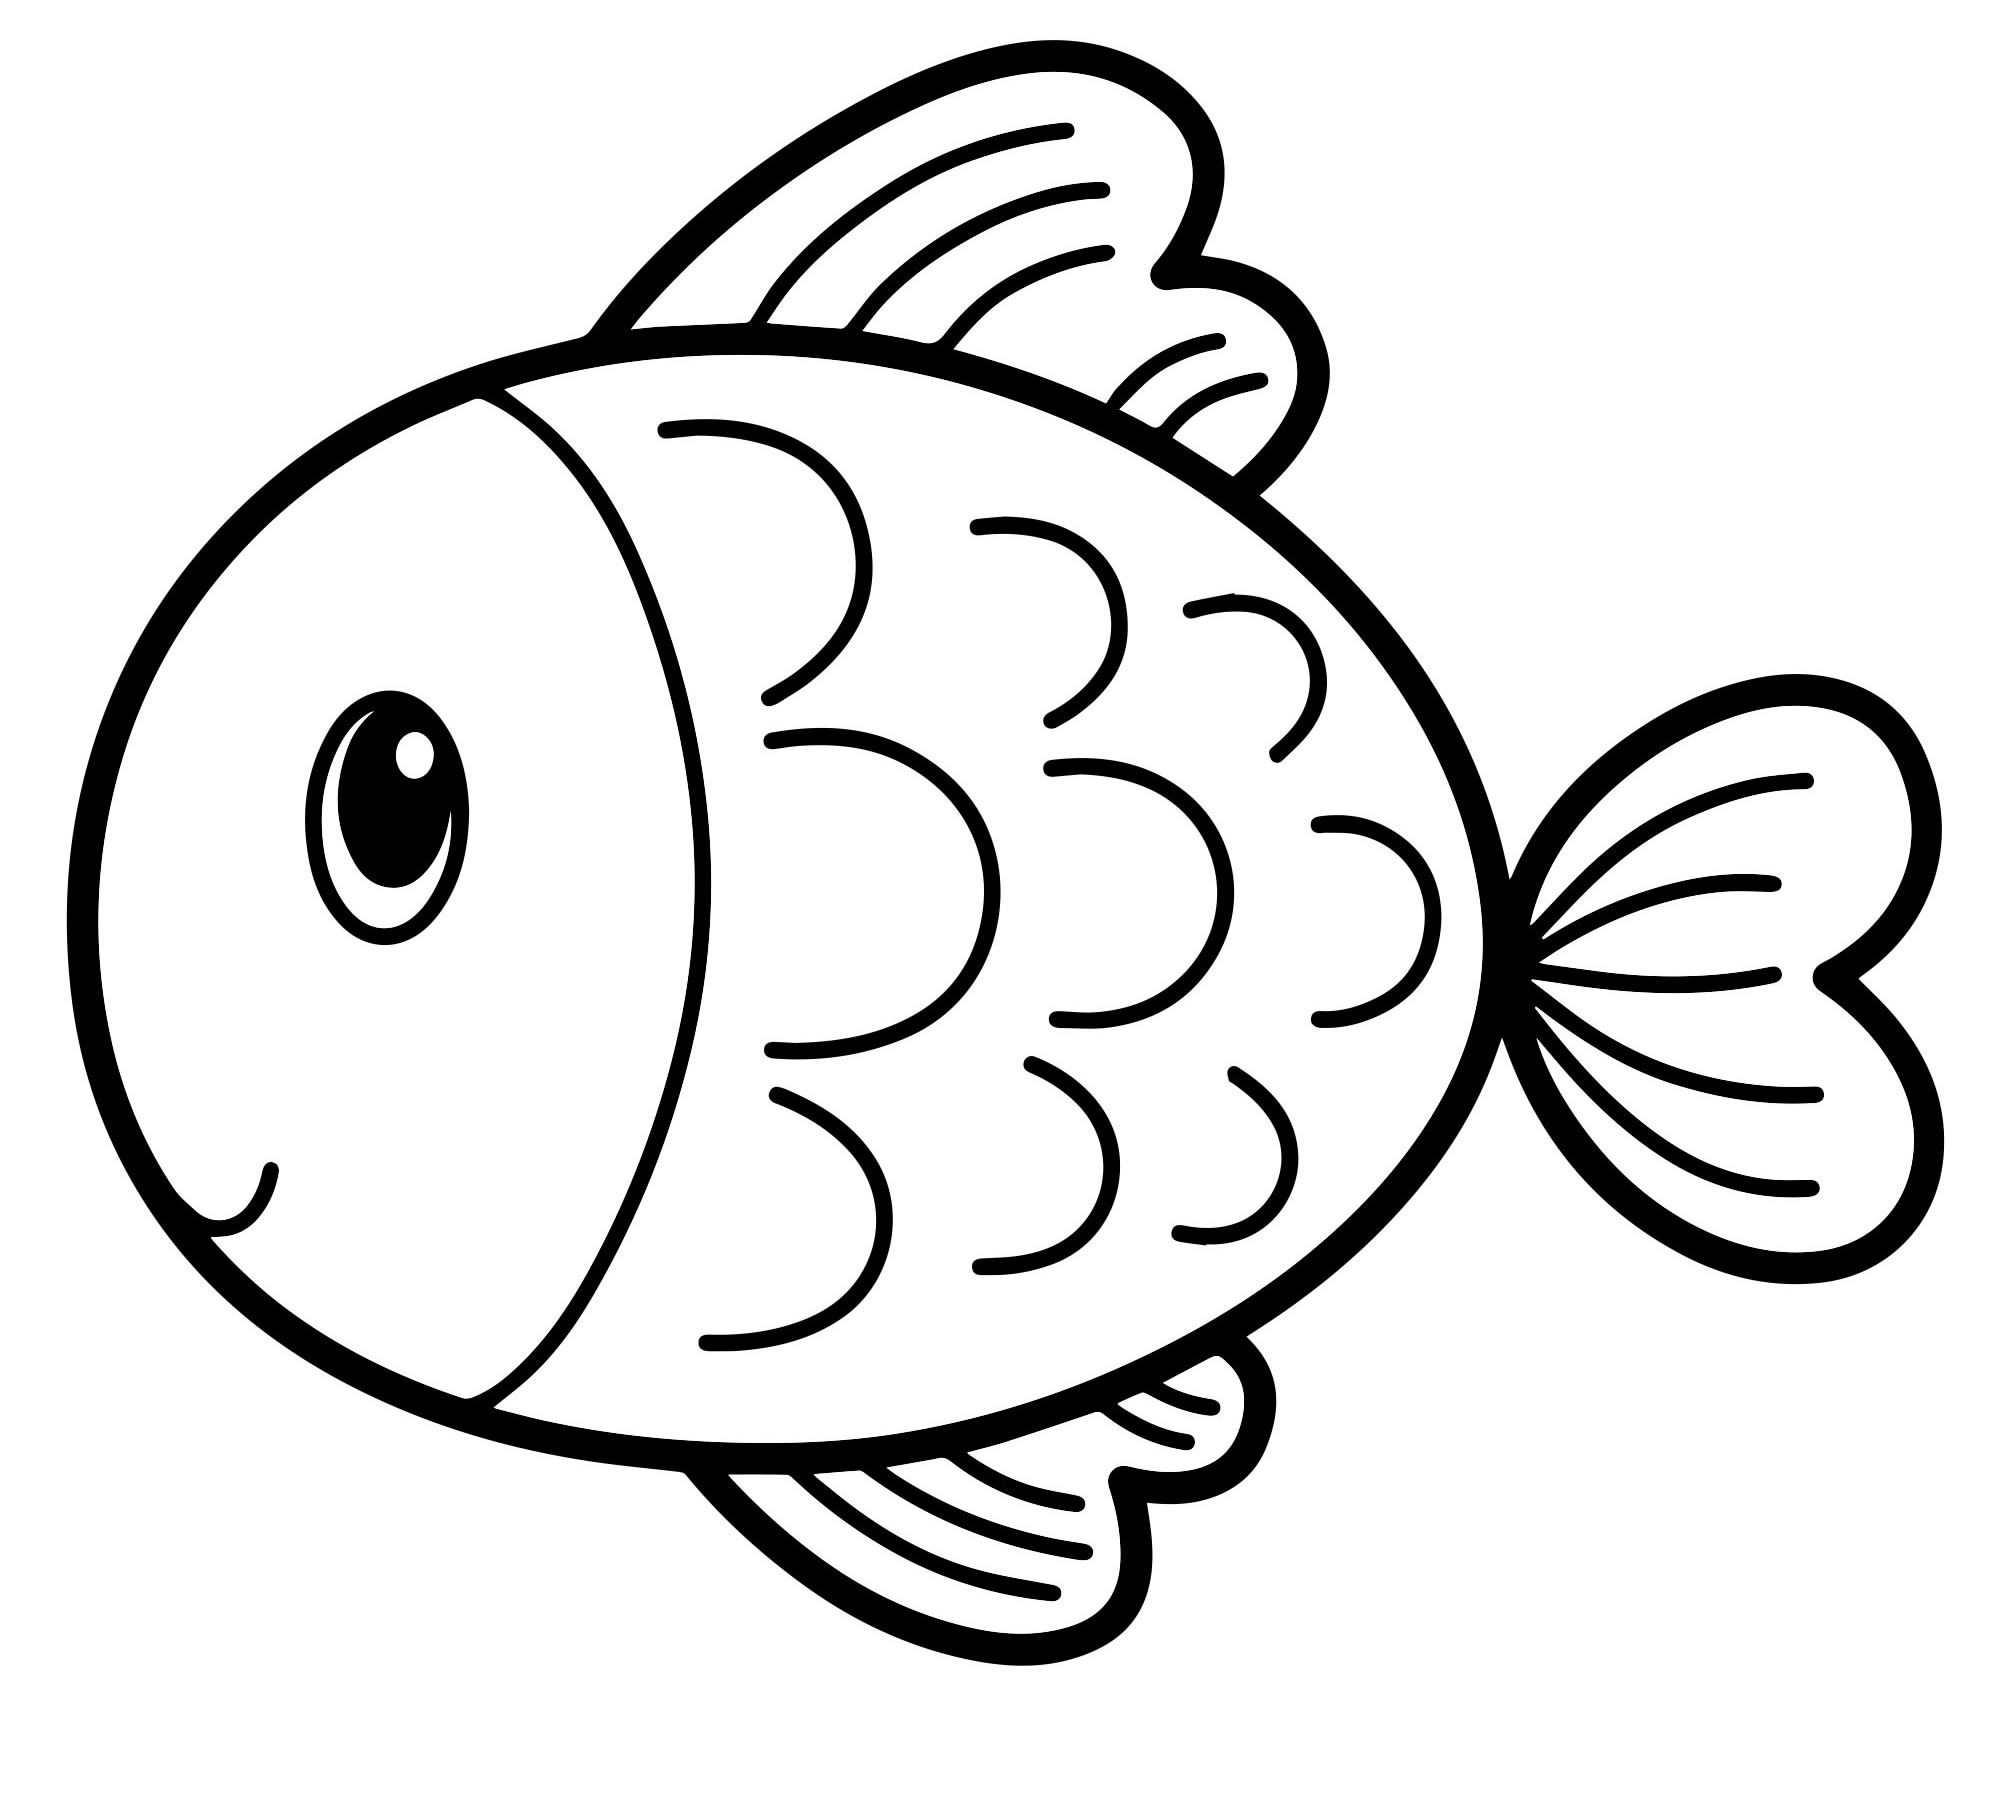 Картинки аквариумных рыбок для детей распечатать цветные для вырезания